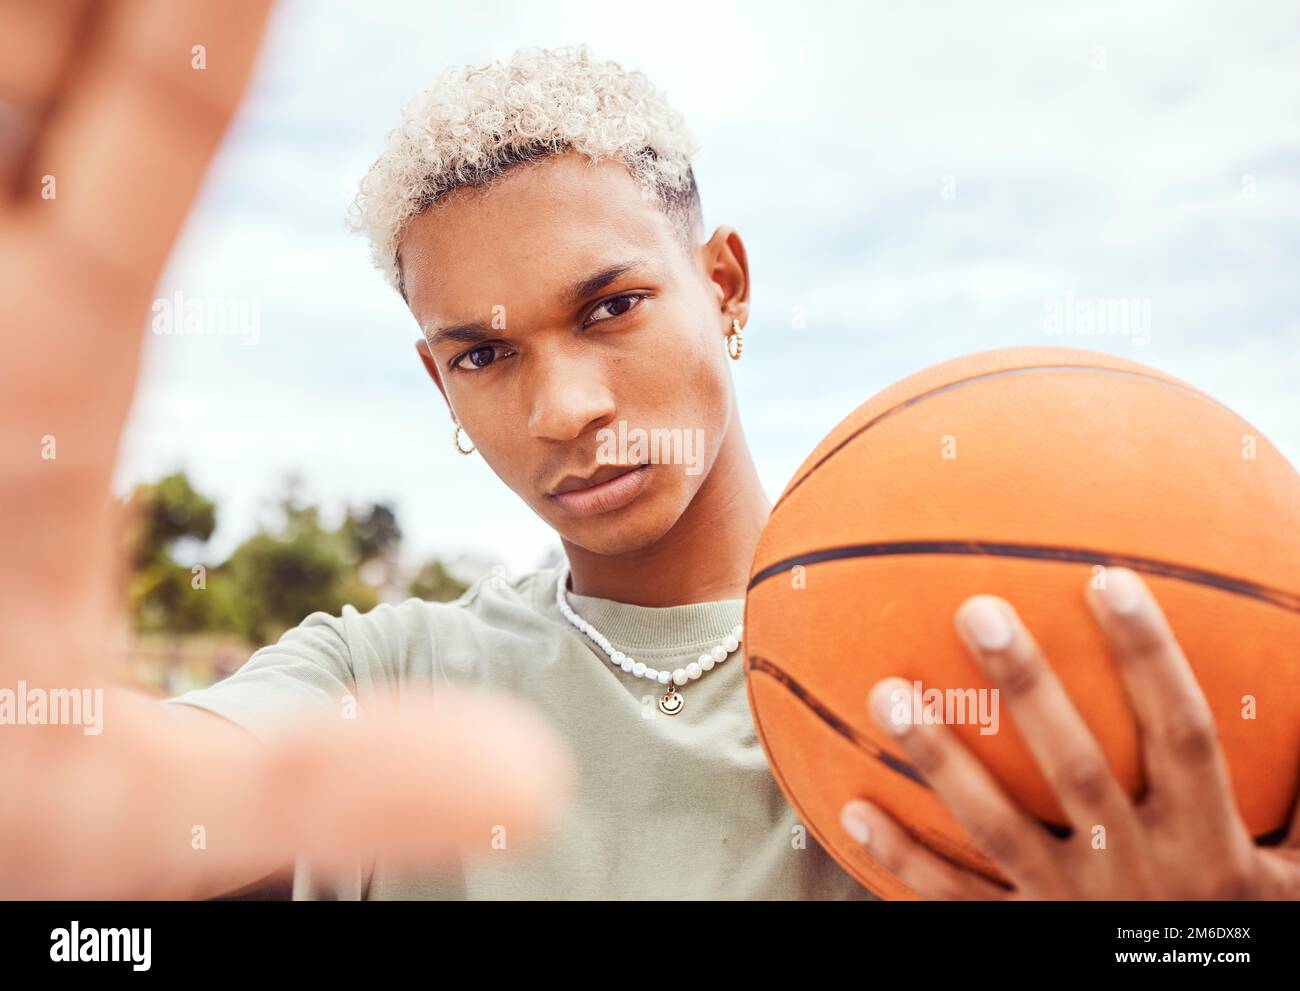 Pin by Kim Owen Morris on photos - senior pics ideas | Basketball senior  pictures, Senior boy photography, Senior pictures